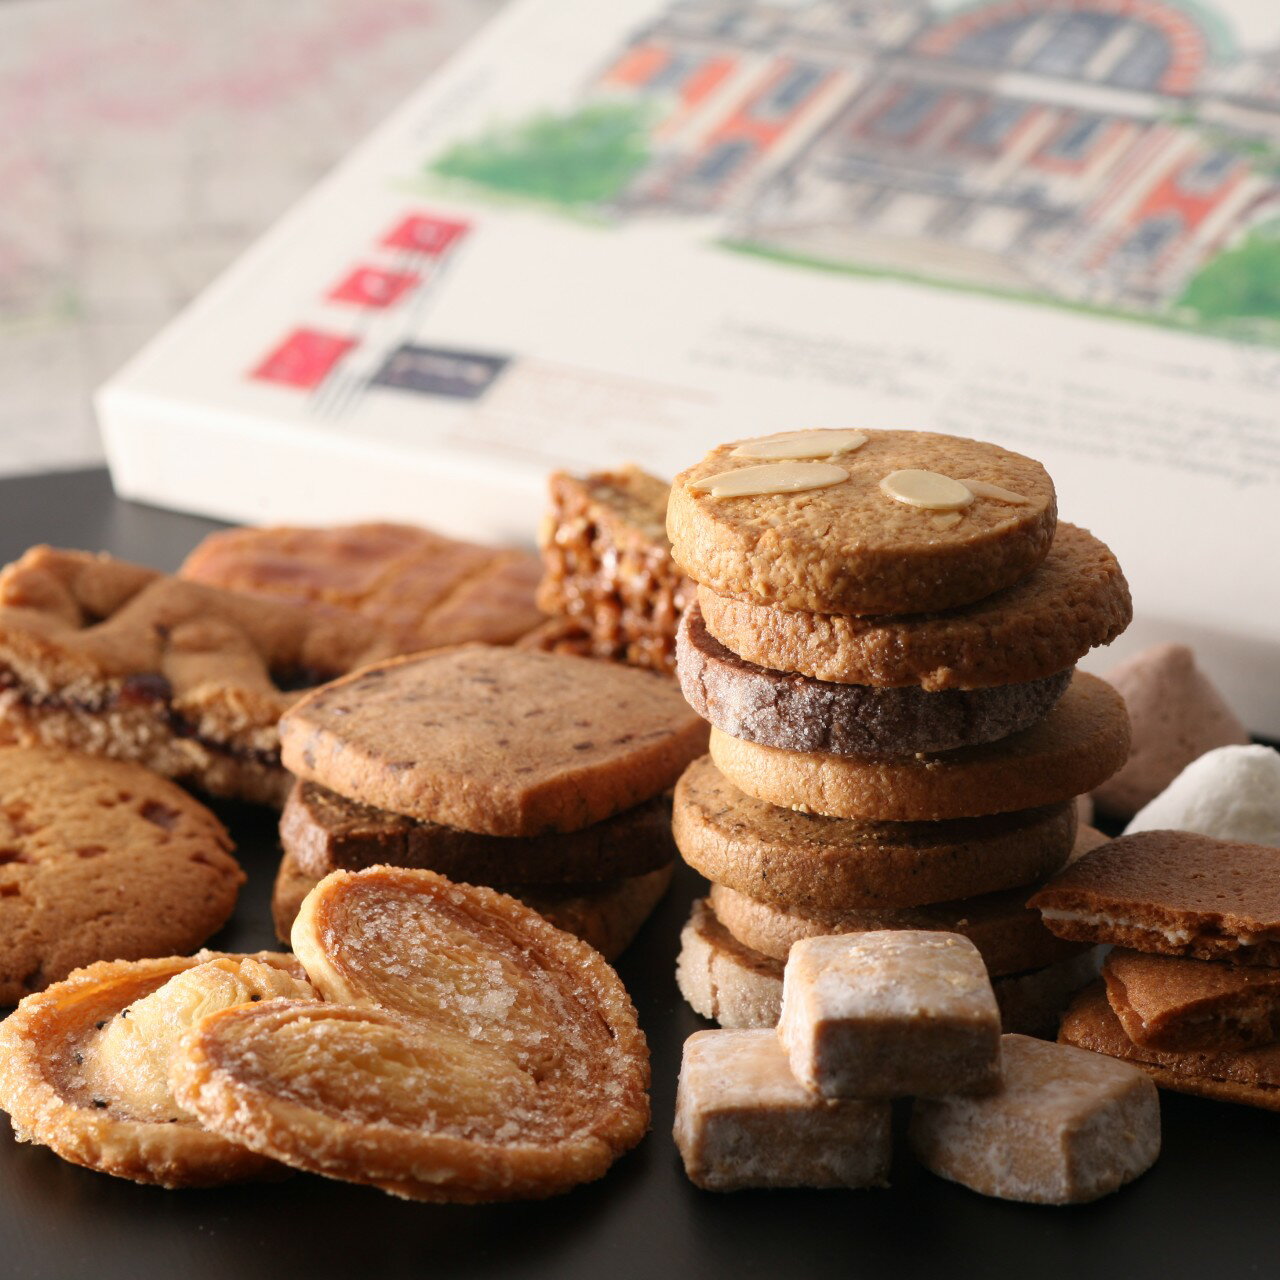 焼き菓子 クッキー 詰め合わせ ギフト 30個入り【ルピノー】きさんじ クッキー 焼き菓子 詰合せ 大阪 なんば